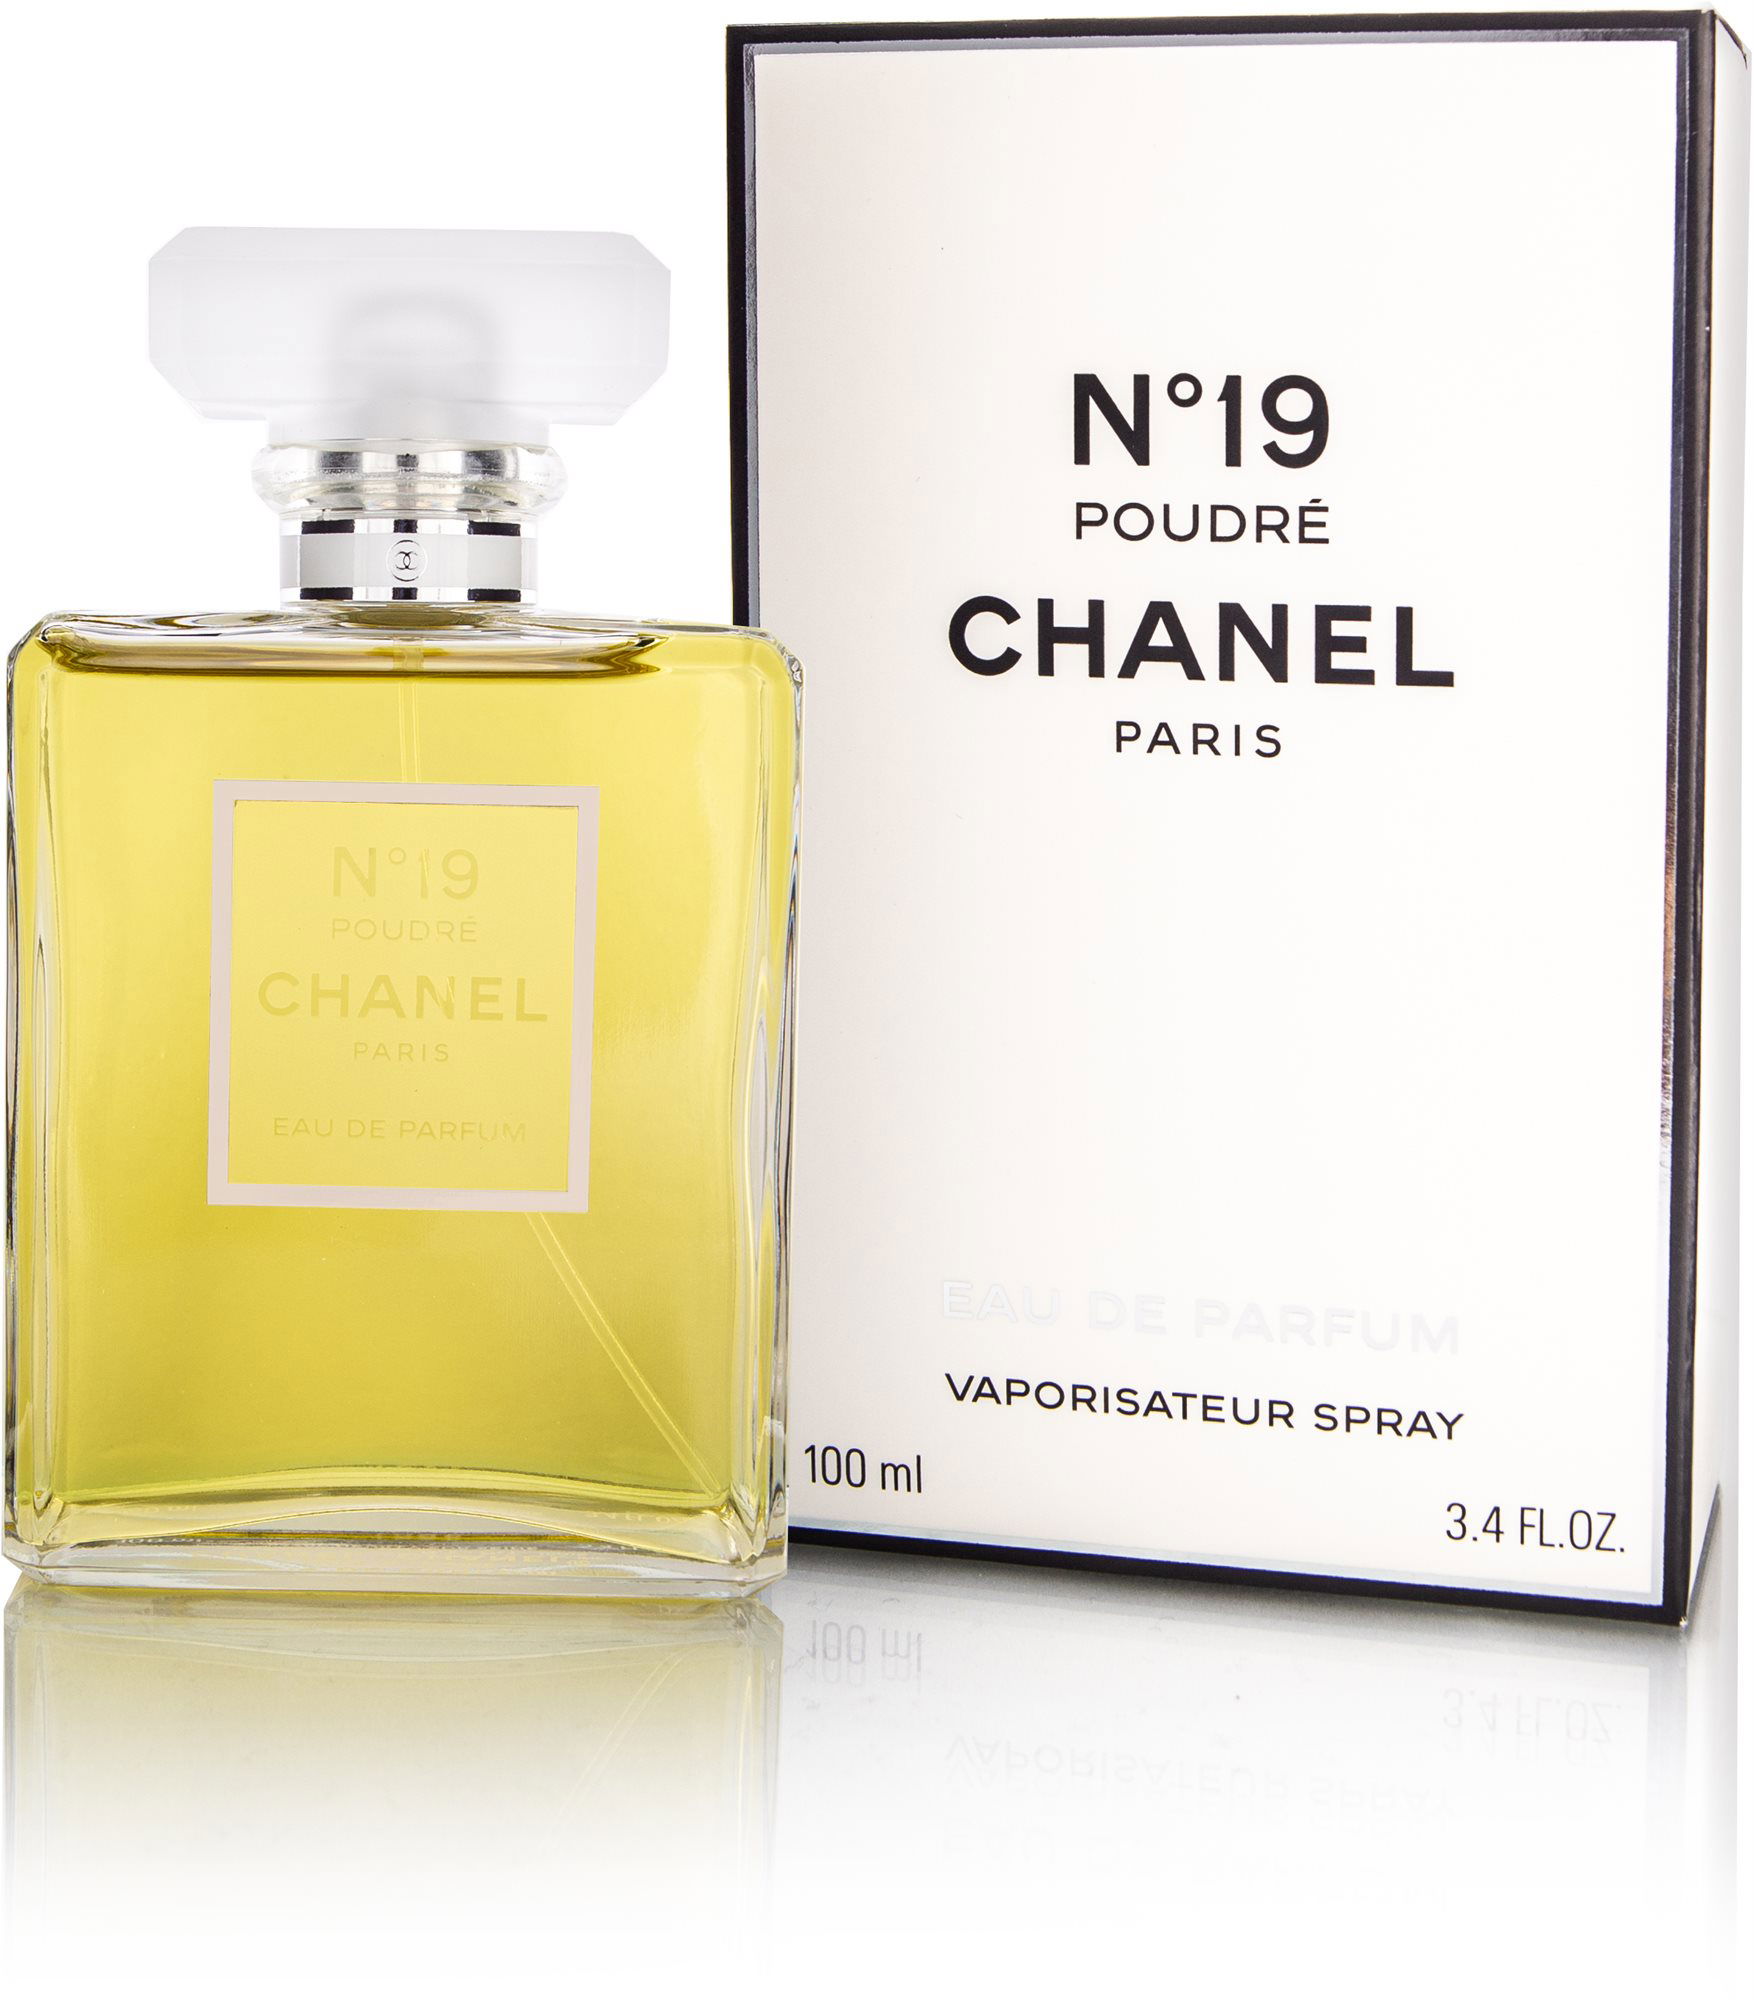 CHANEL No.19 Poudre EdP 100ml - Eau de Parfum | Alza.cz